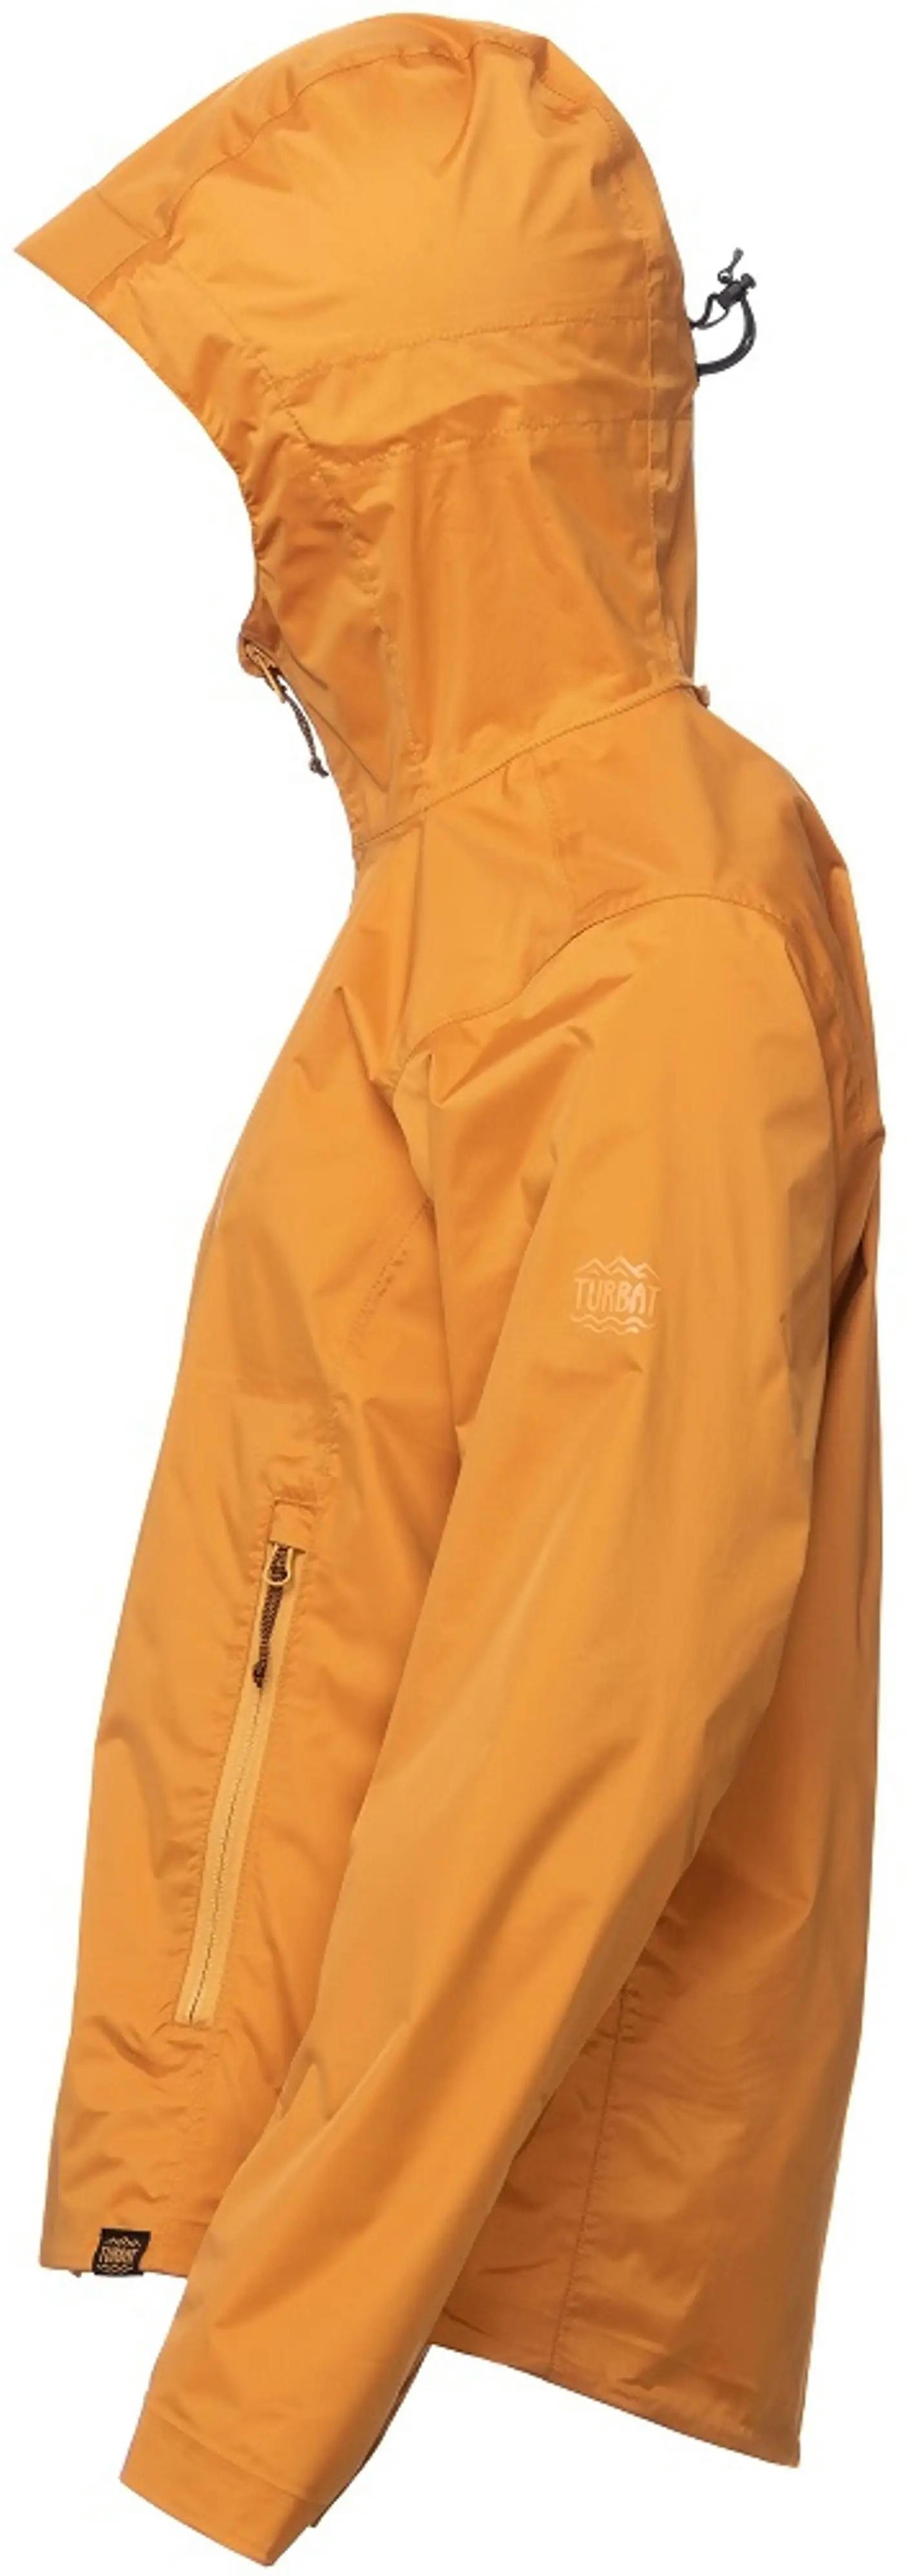 Куртка жіноча Turbat Isla Wmn golden oak orange XS помаранчевийфото3